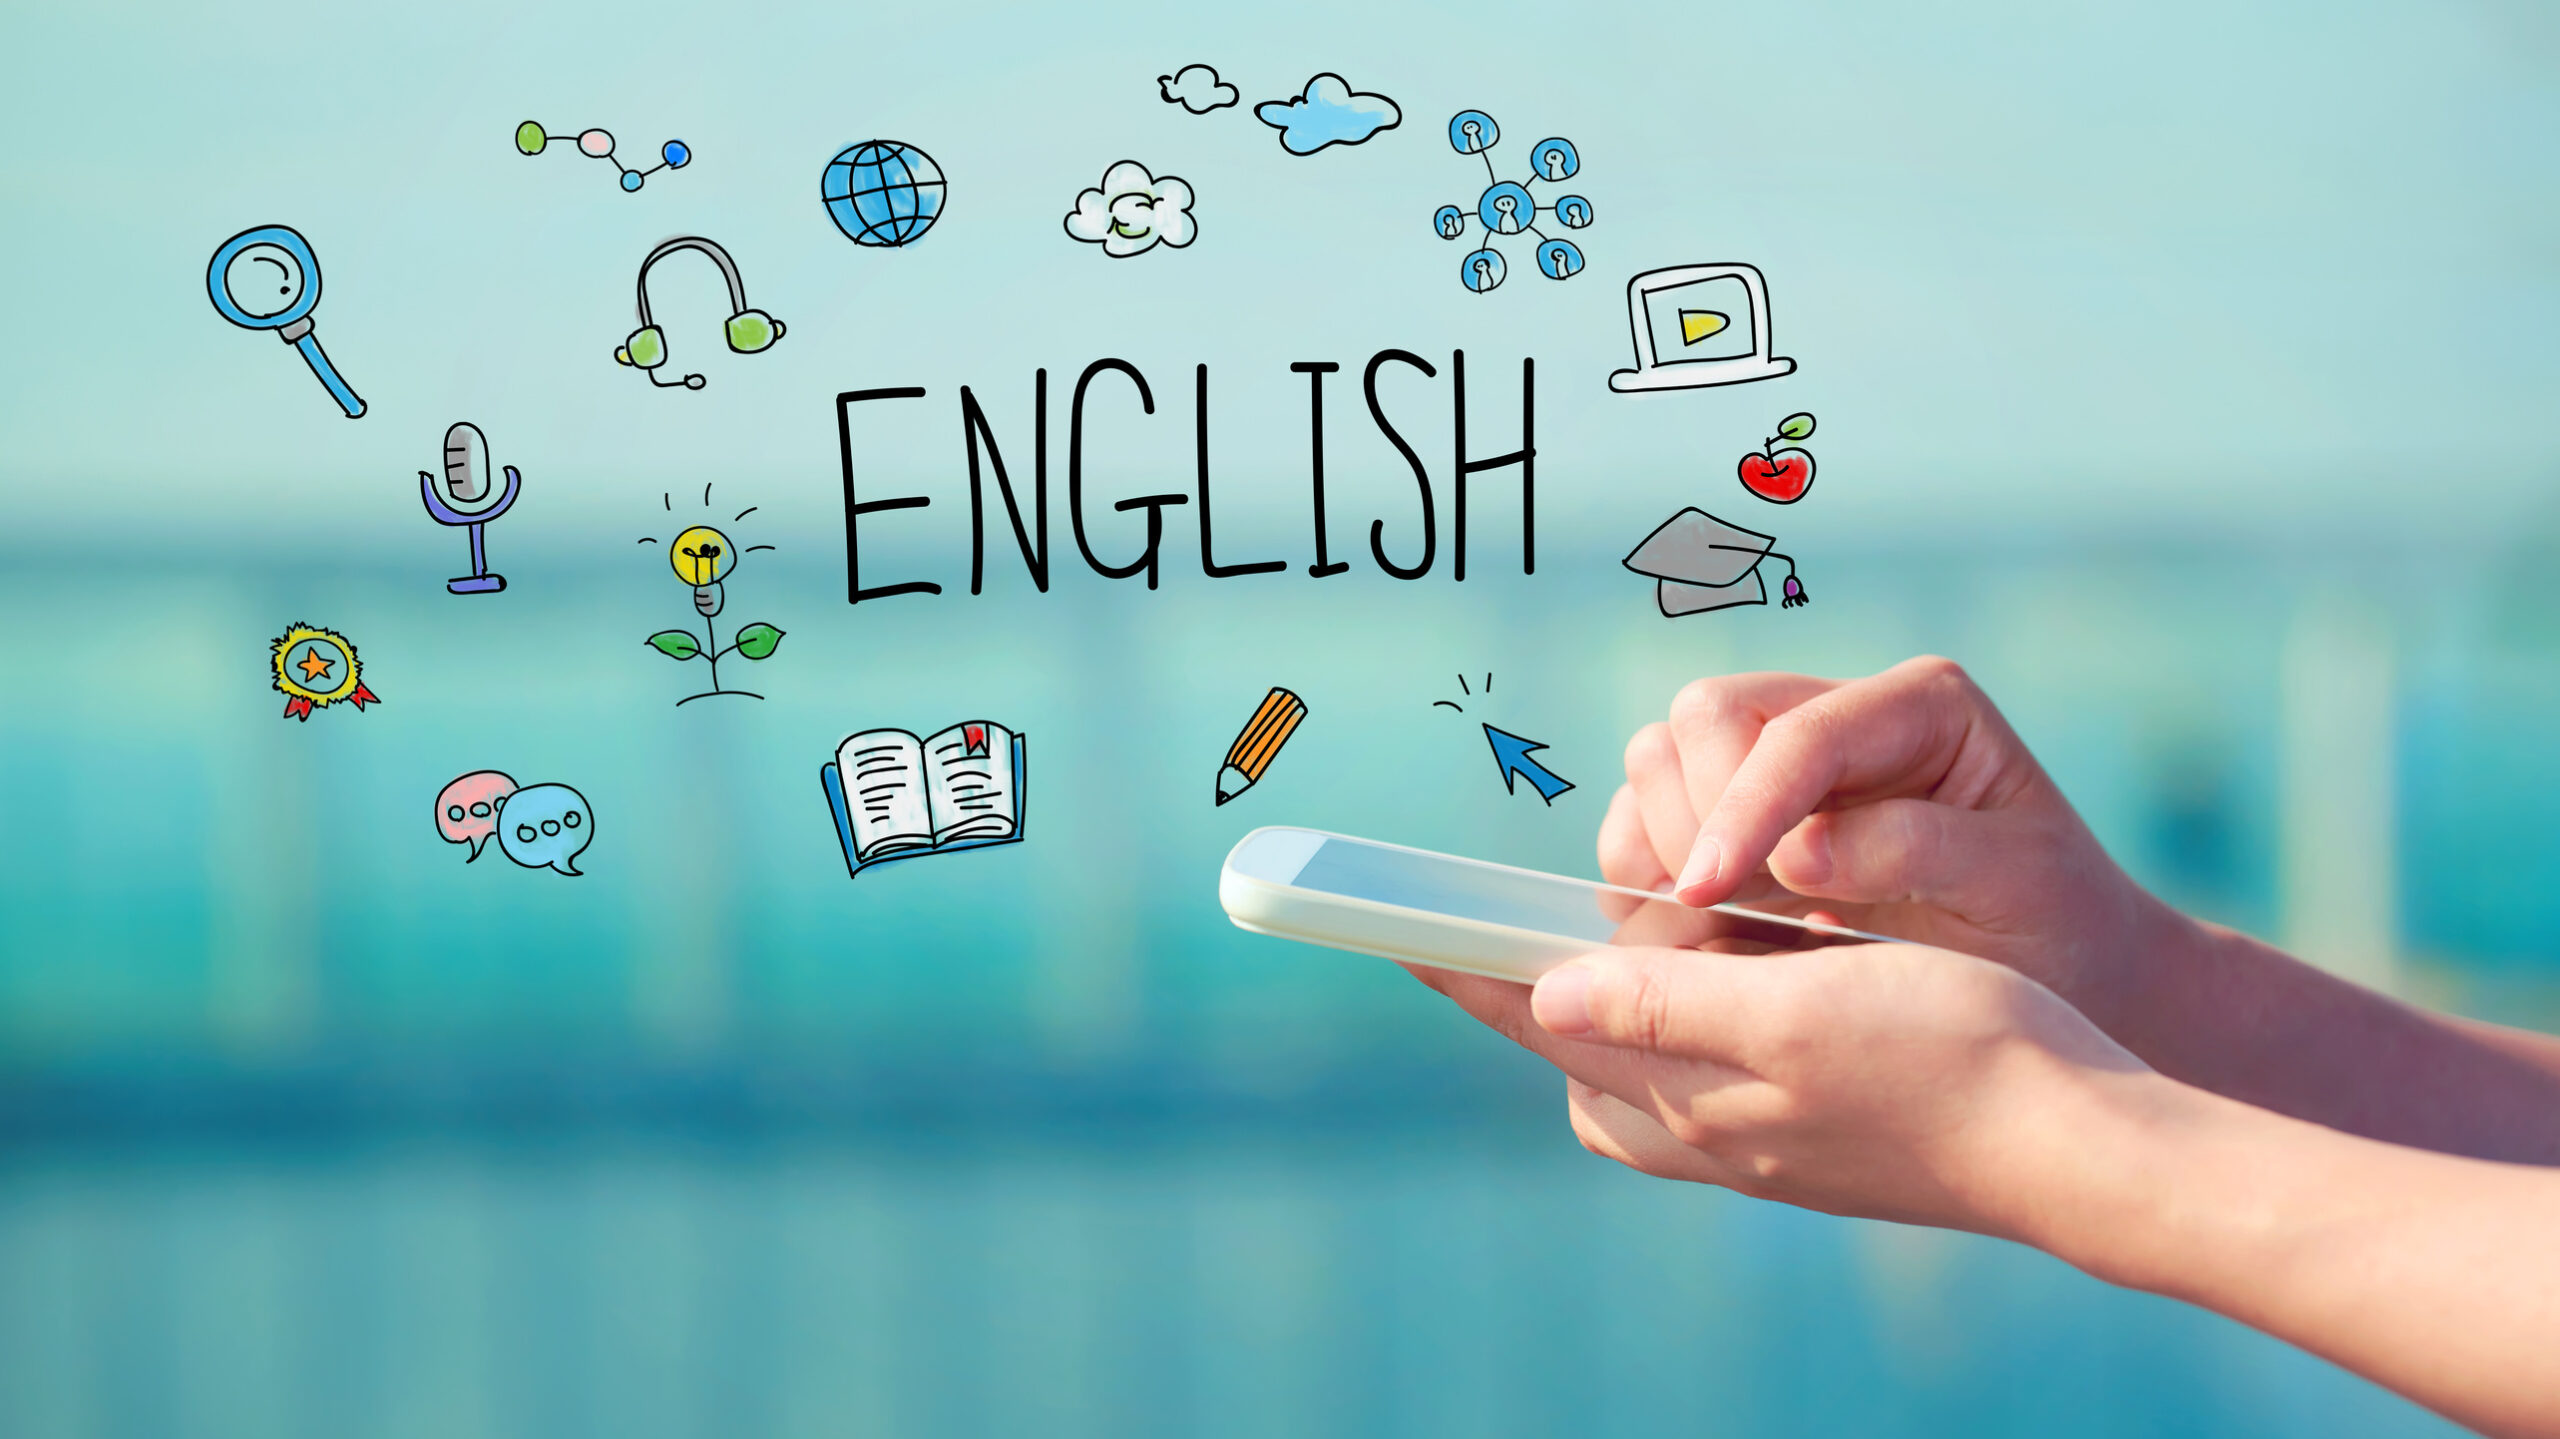 أفضل 5 تطبيقات لتعليم اللغة الانجليزية مجانية